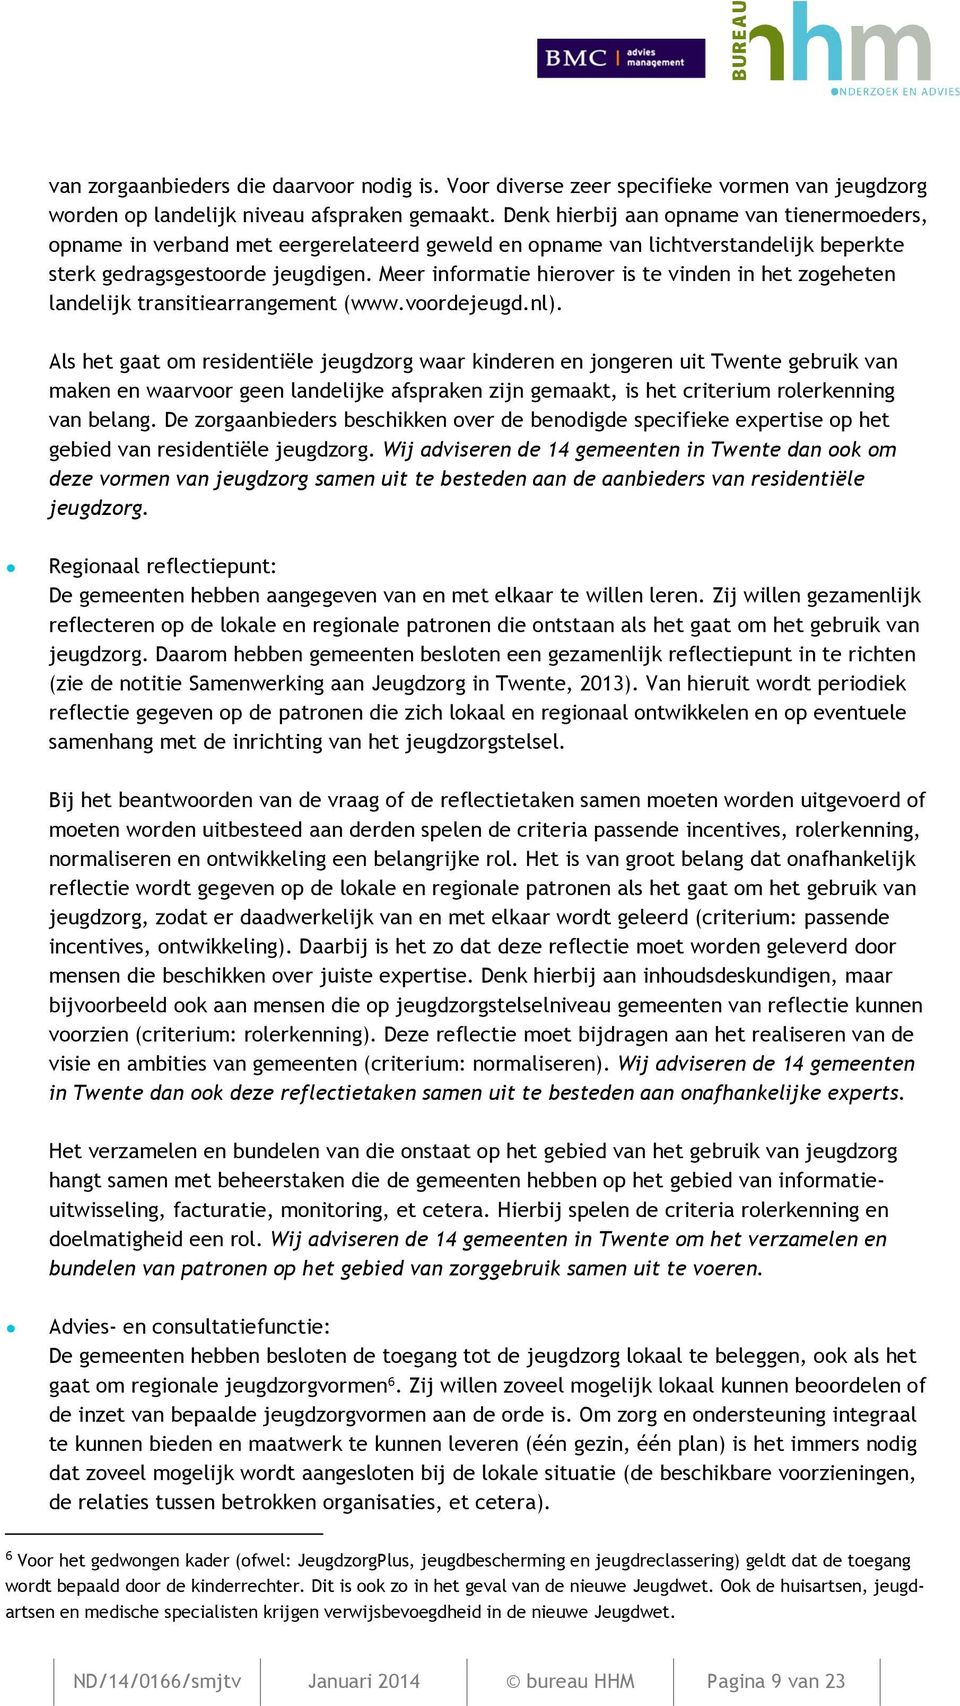 Meer informatie hierover is te vinden in het zogeheten landelijk transitiearrangement (www.voordejeugd.nl).